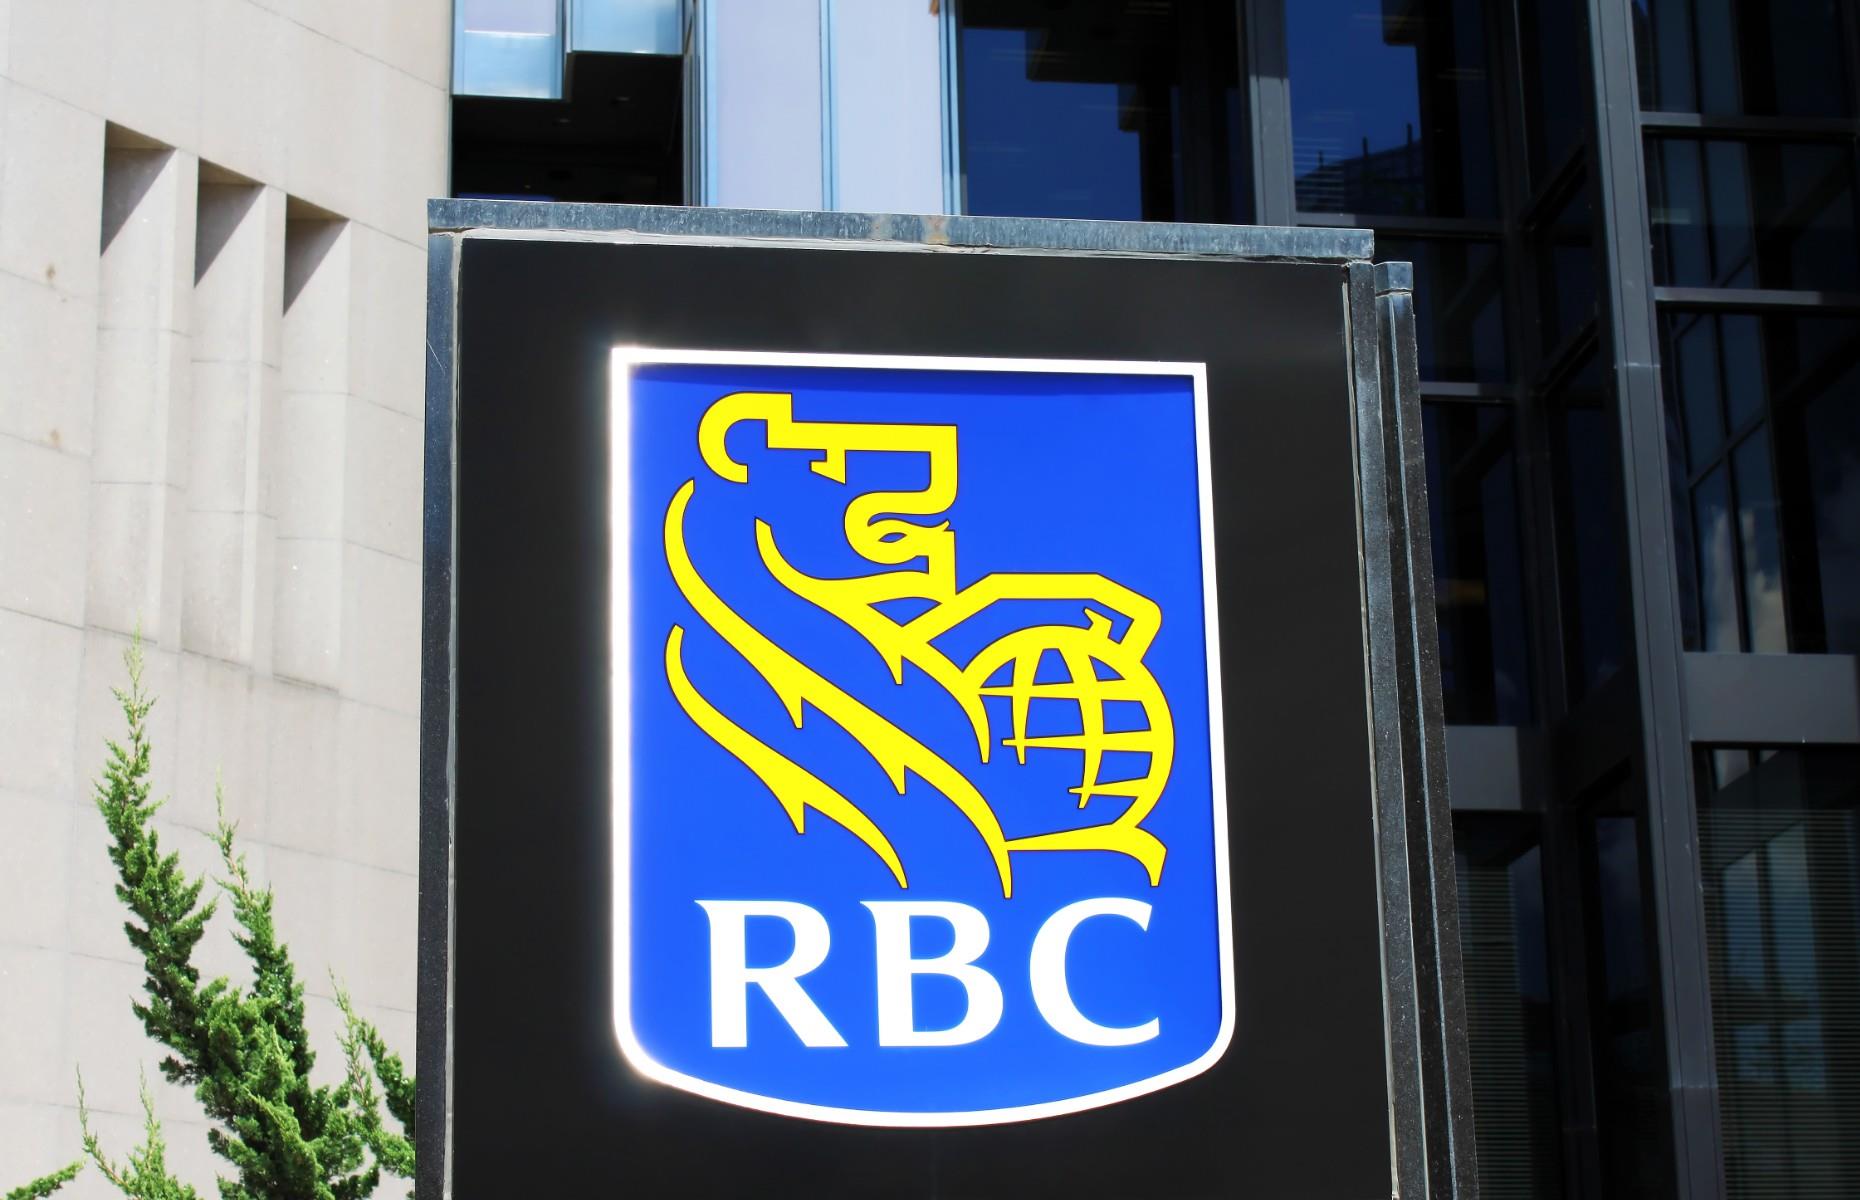 19. Royal Bank of Canada